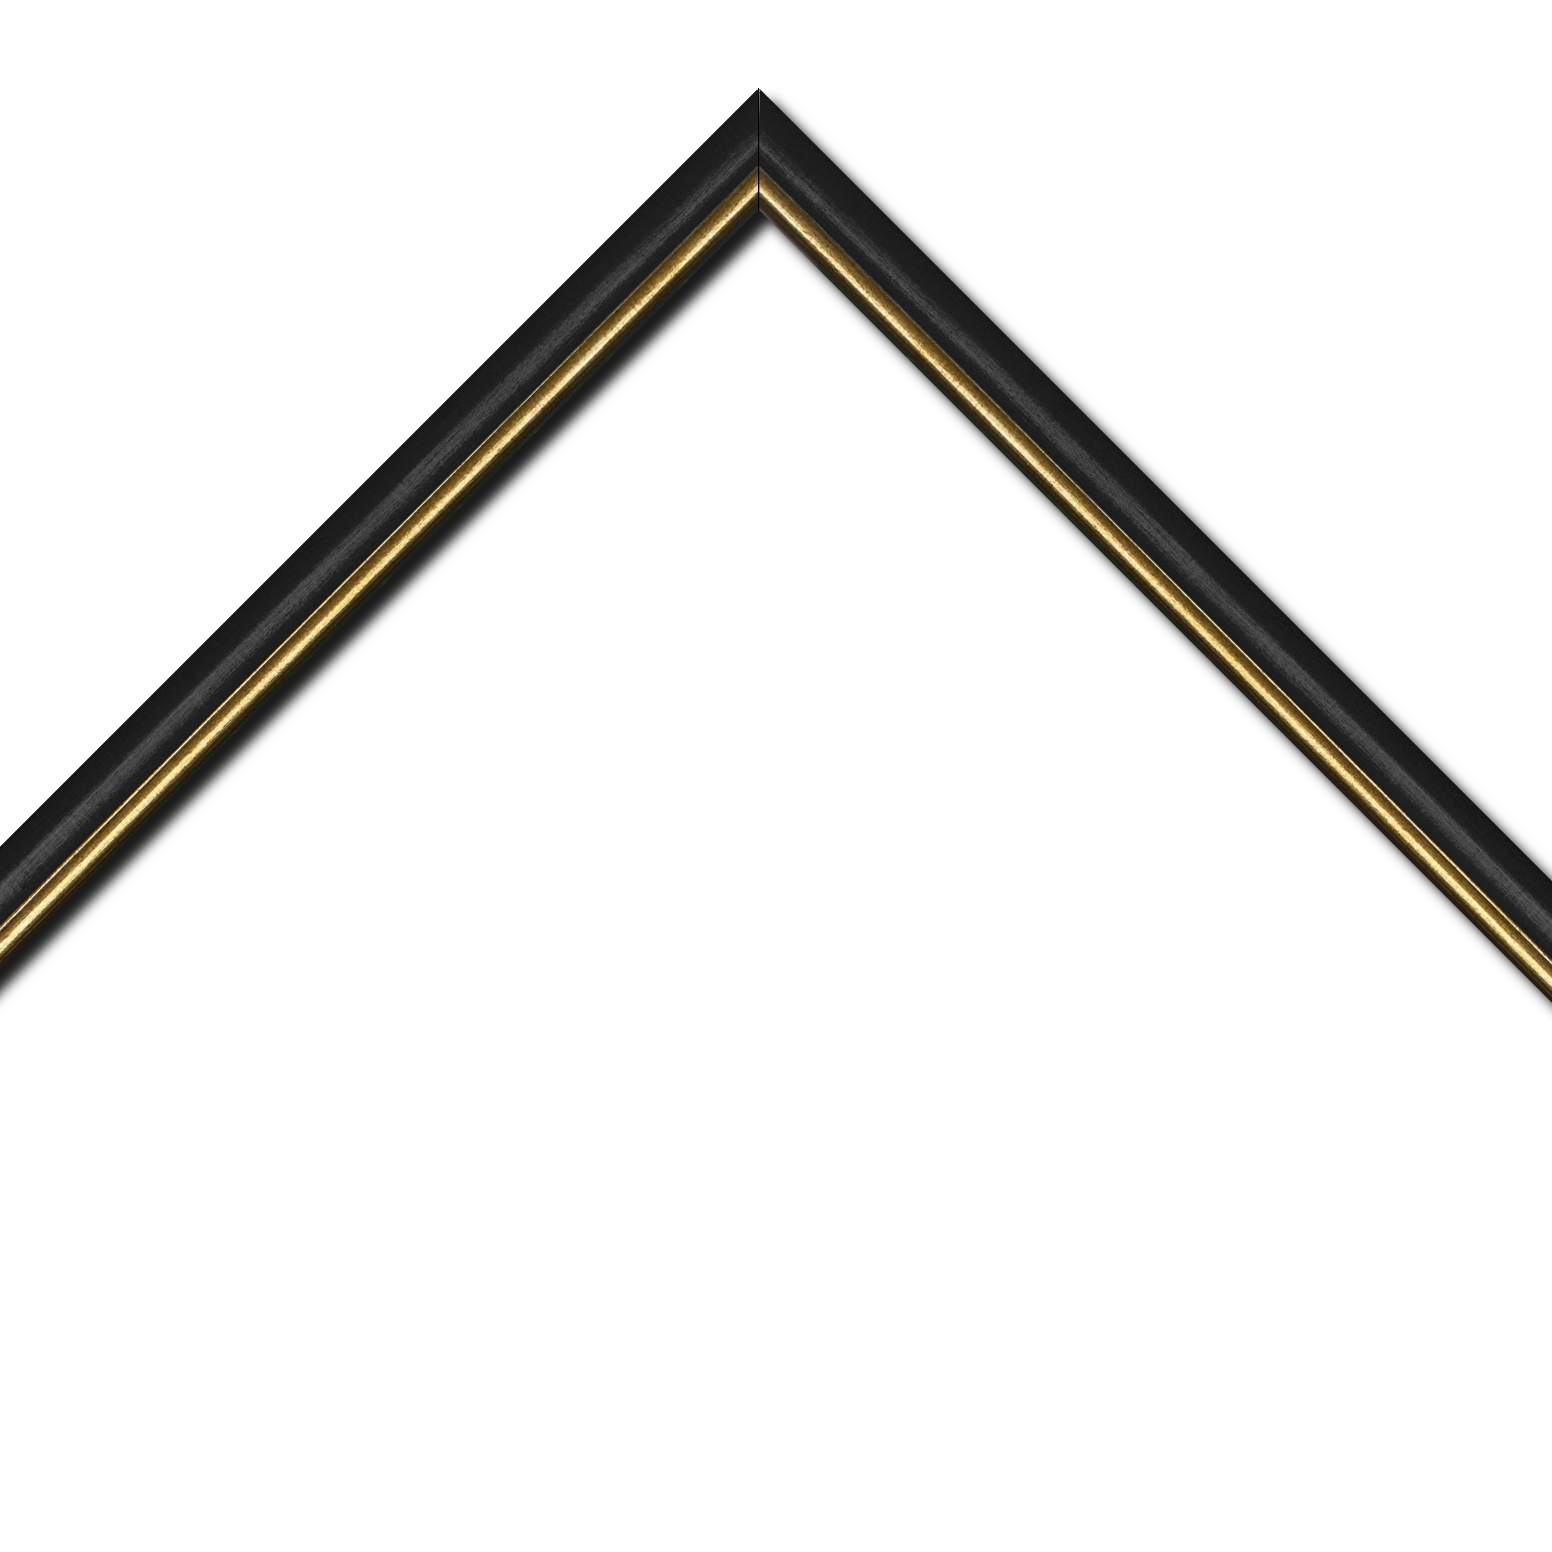 Baguette bois profil arrondi largeur 2.1cm couleur noir mat filet or